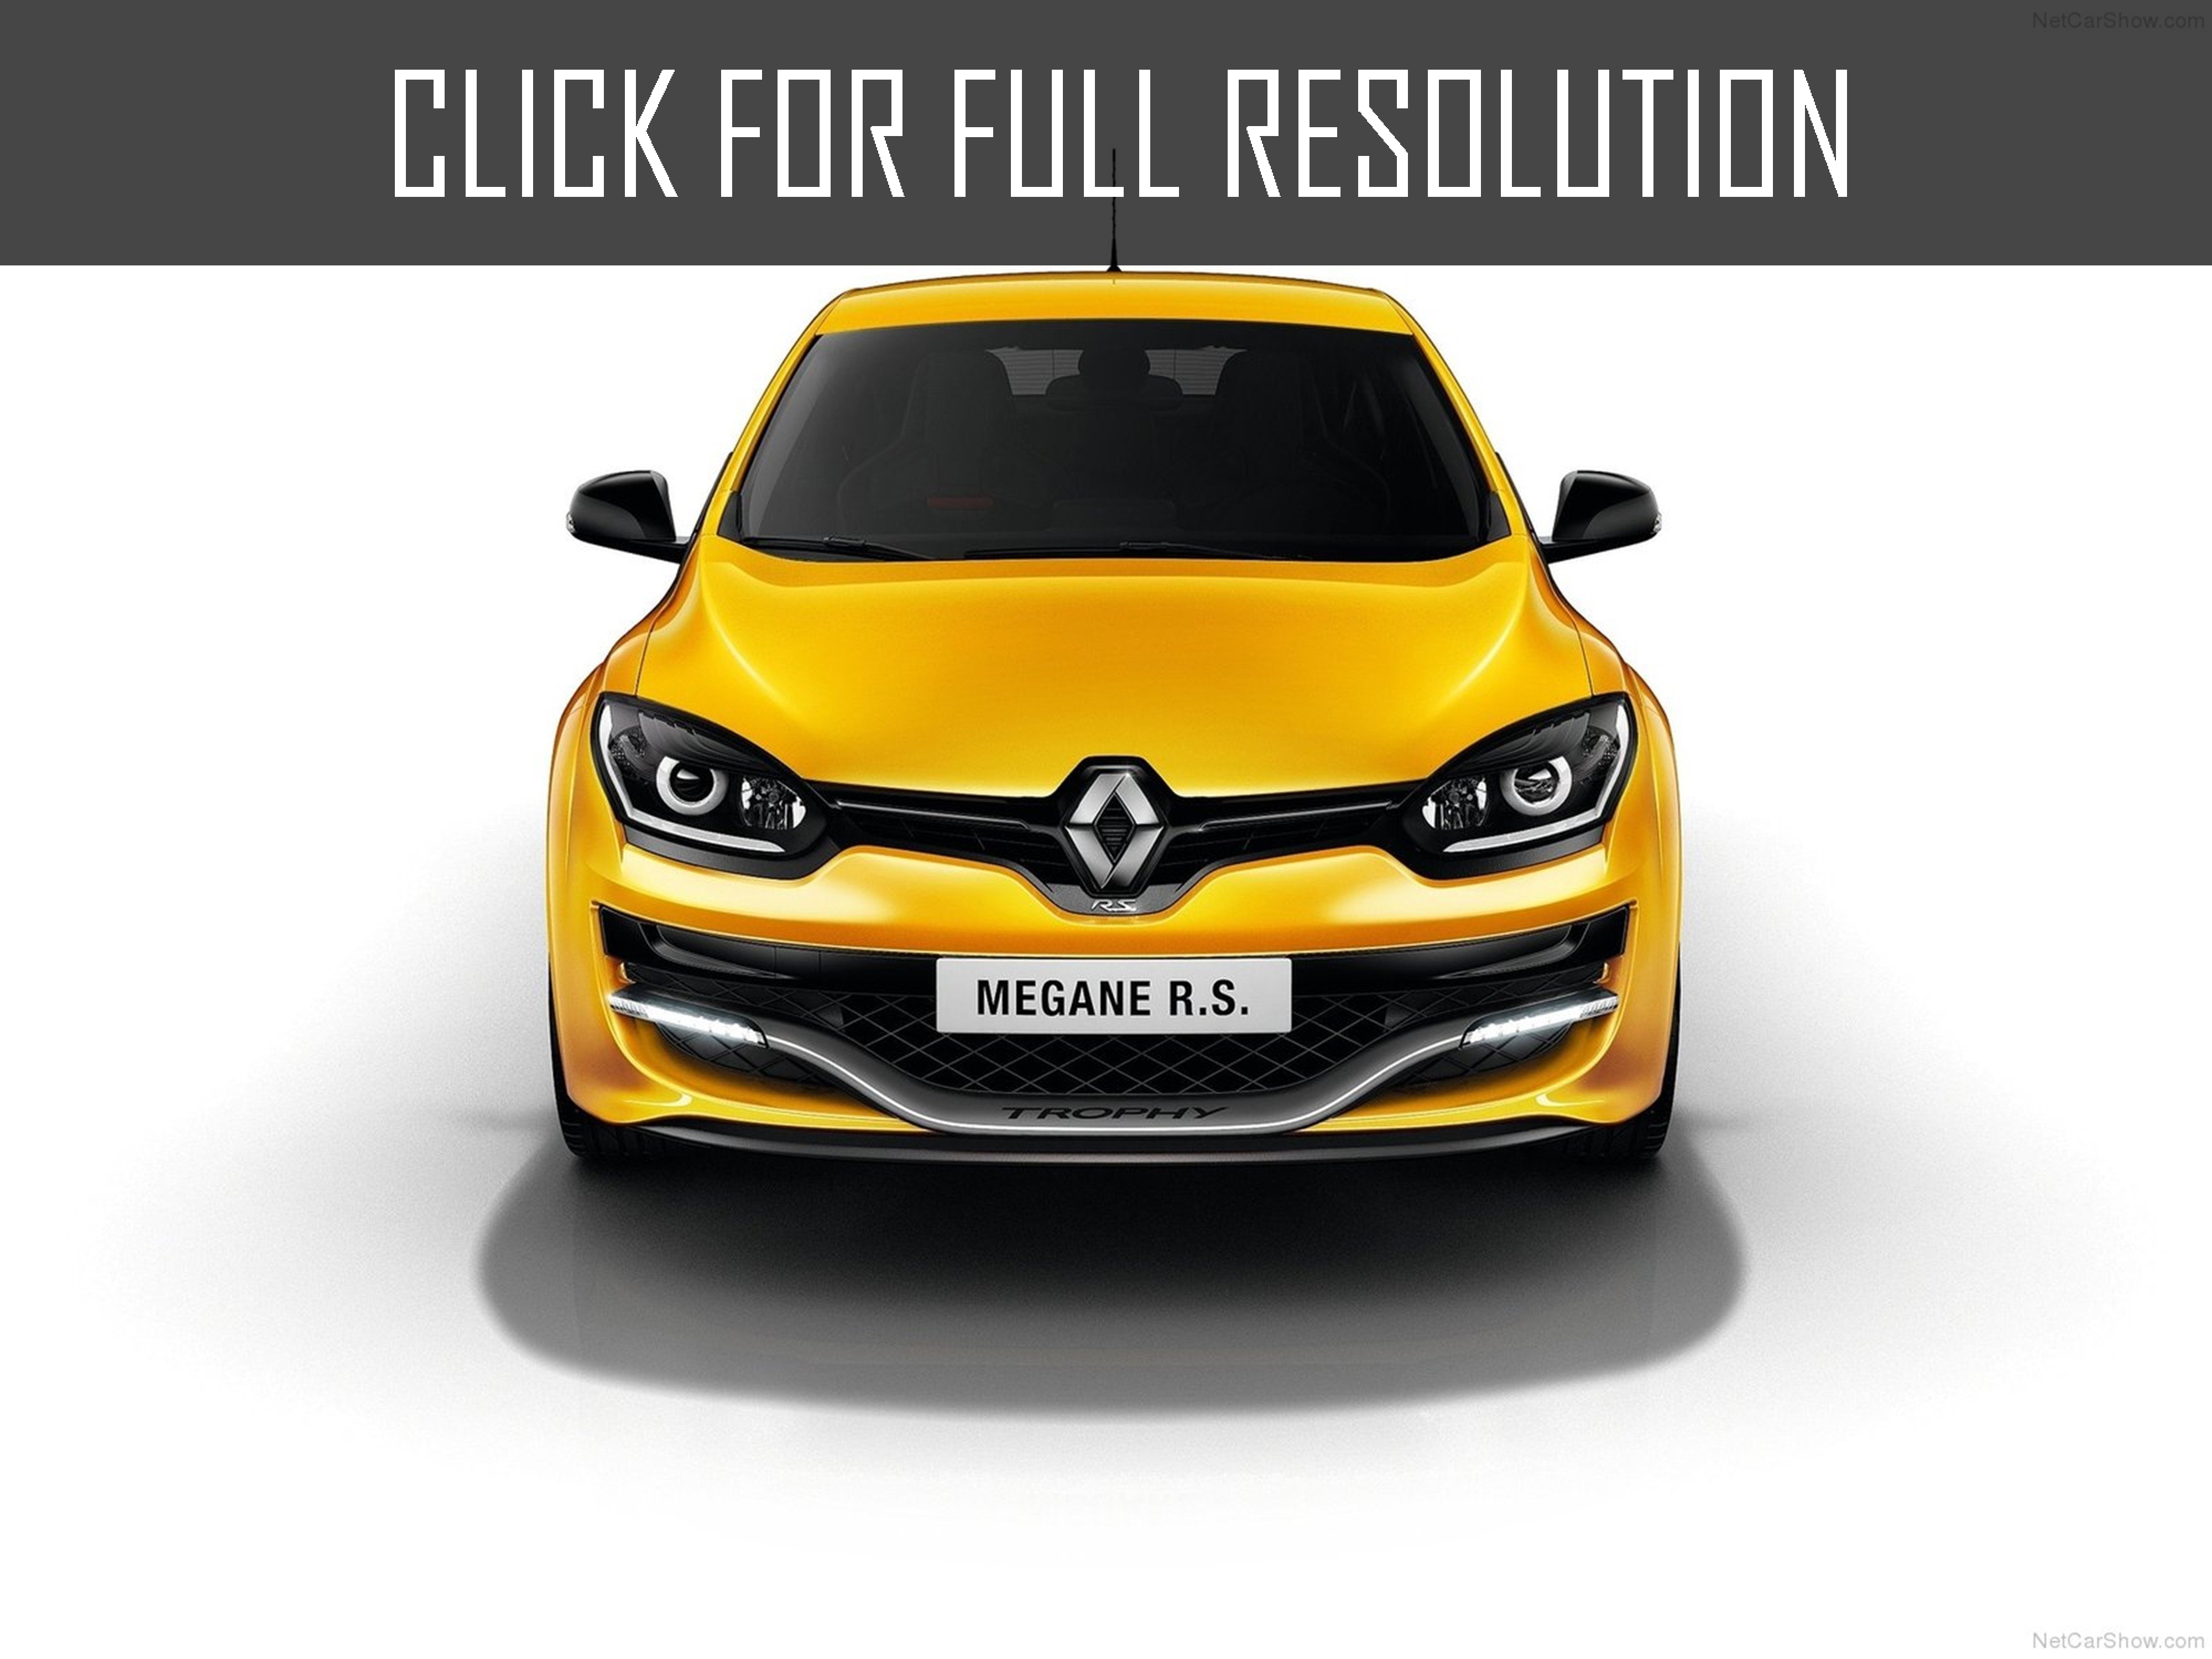 2015 Renault Megane Sport